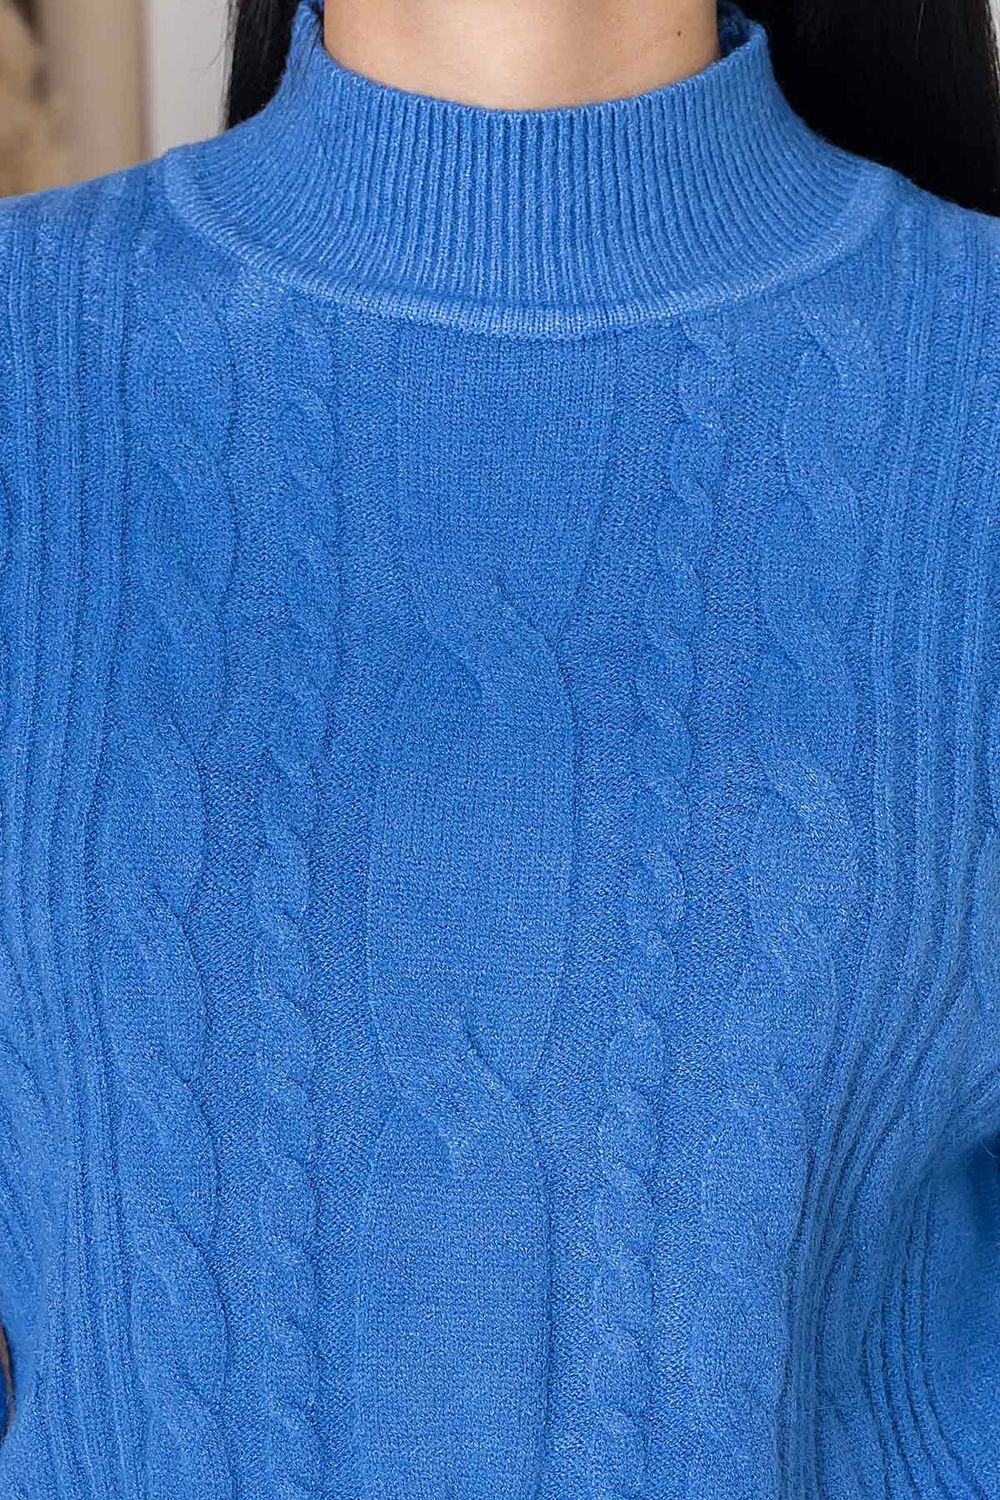 Жіночий в'язаний светр з візерунком коси синього кольору - фото